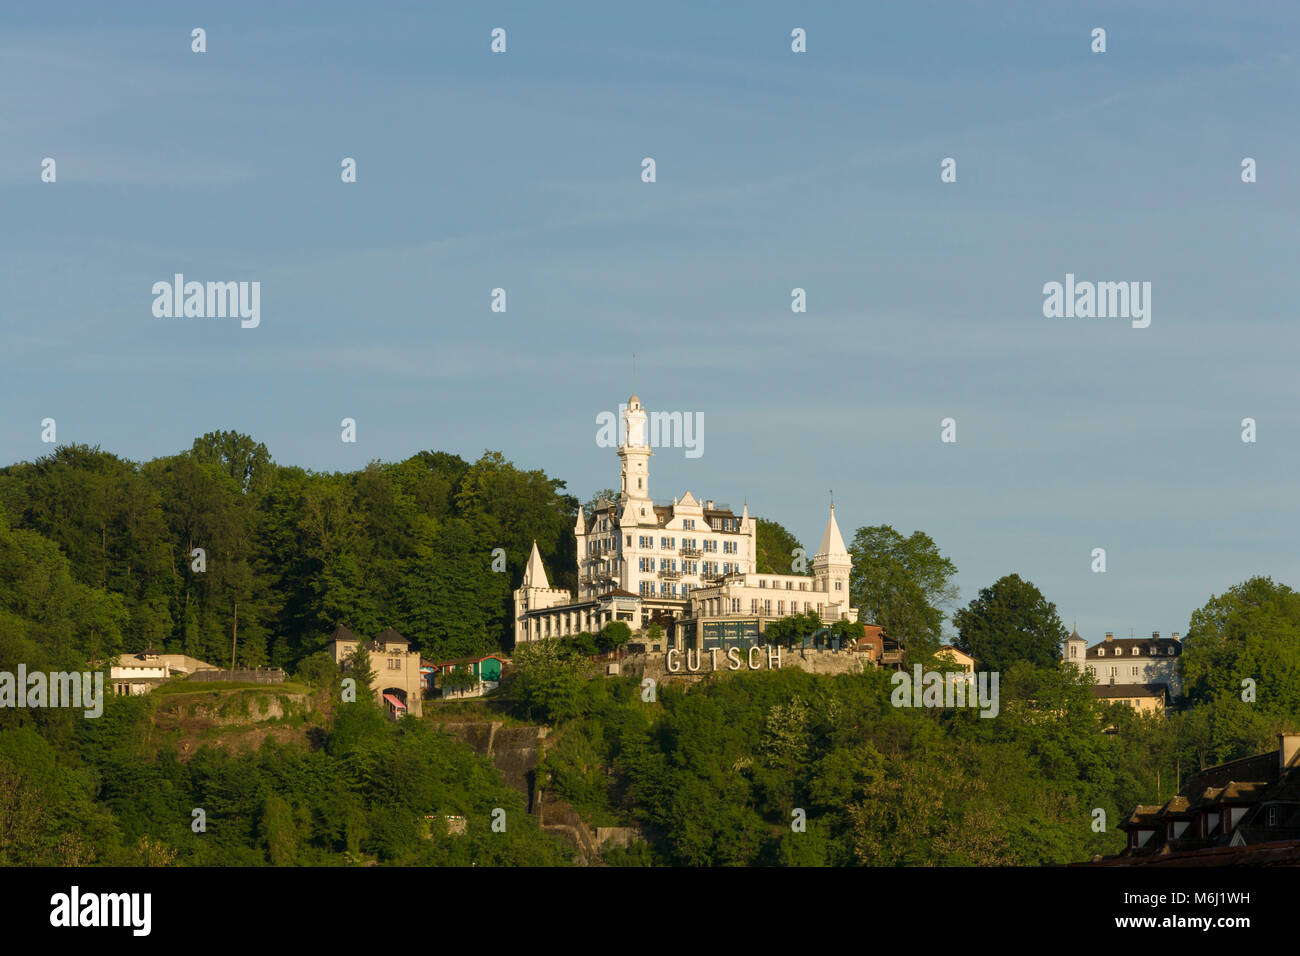 Berühmte 5 Sterne Luxus Hotel castle Gutsch liegt hoch auf einem Hügel über Luzern Schweiz durch grünen Wald und blauer Himmel Pan negativen Raum umgeben Stockfoto